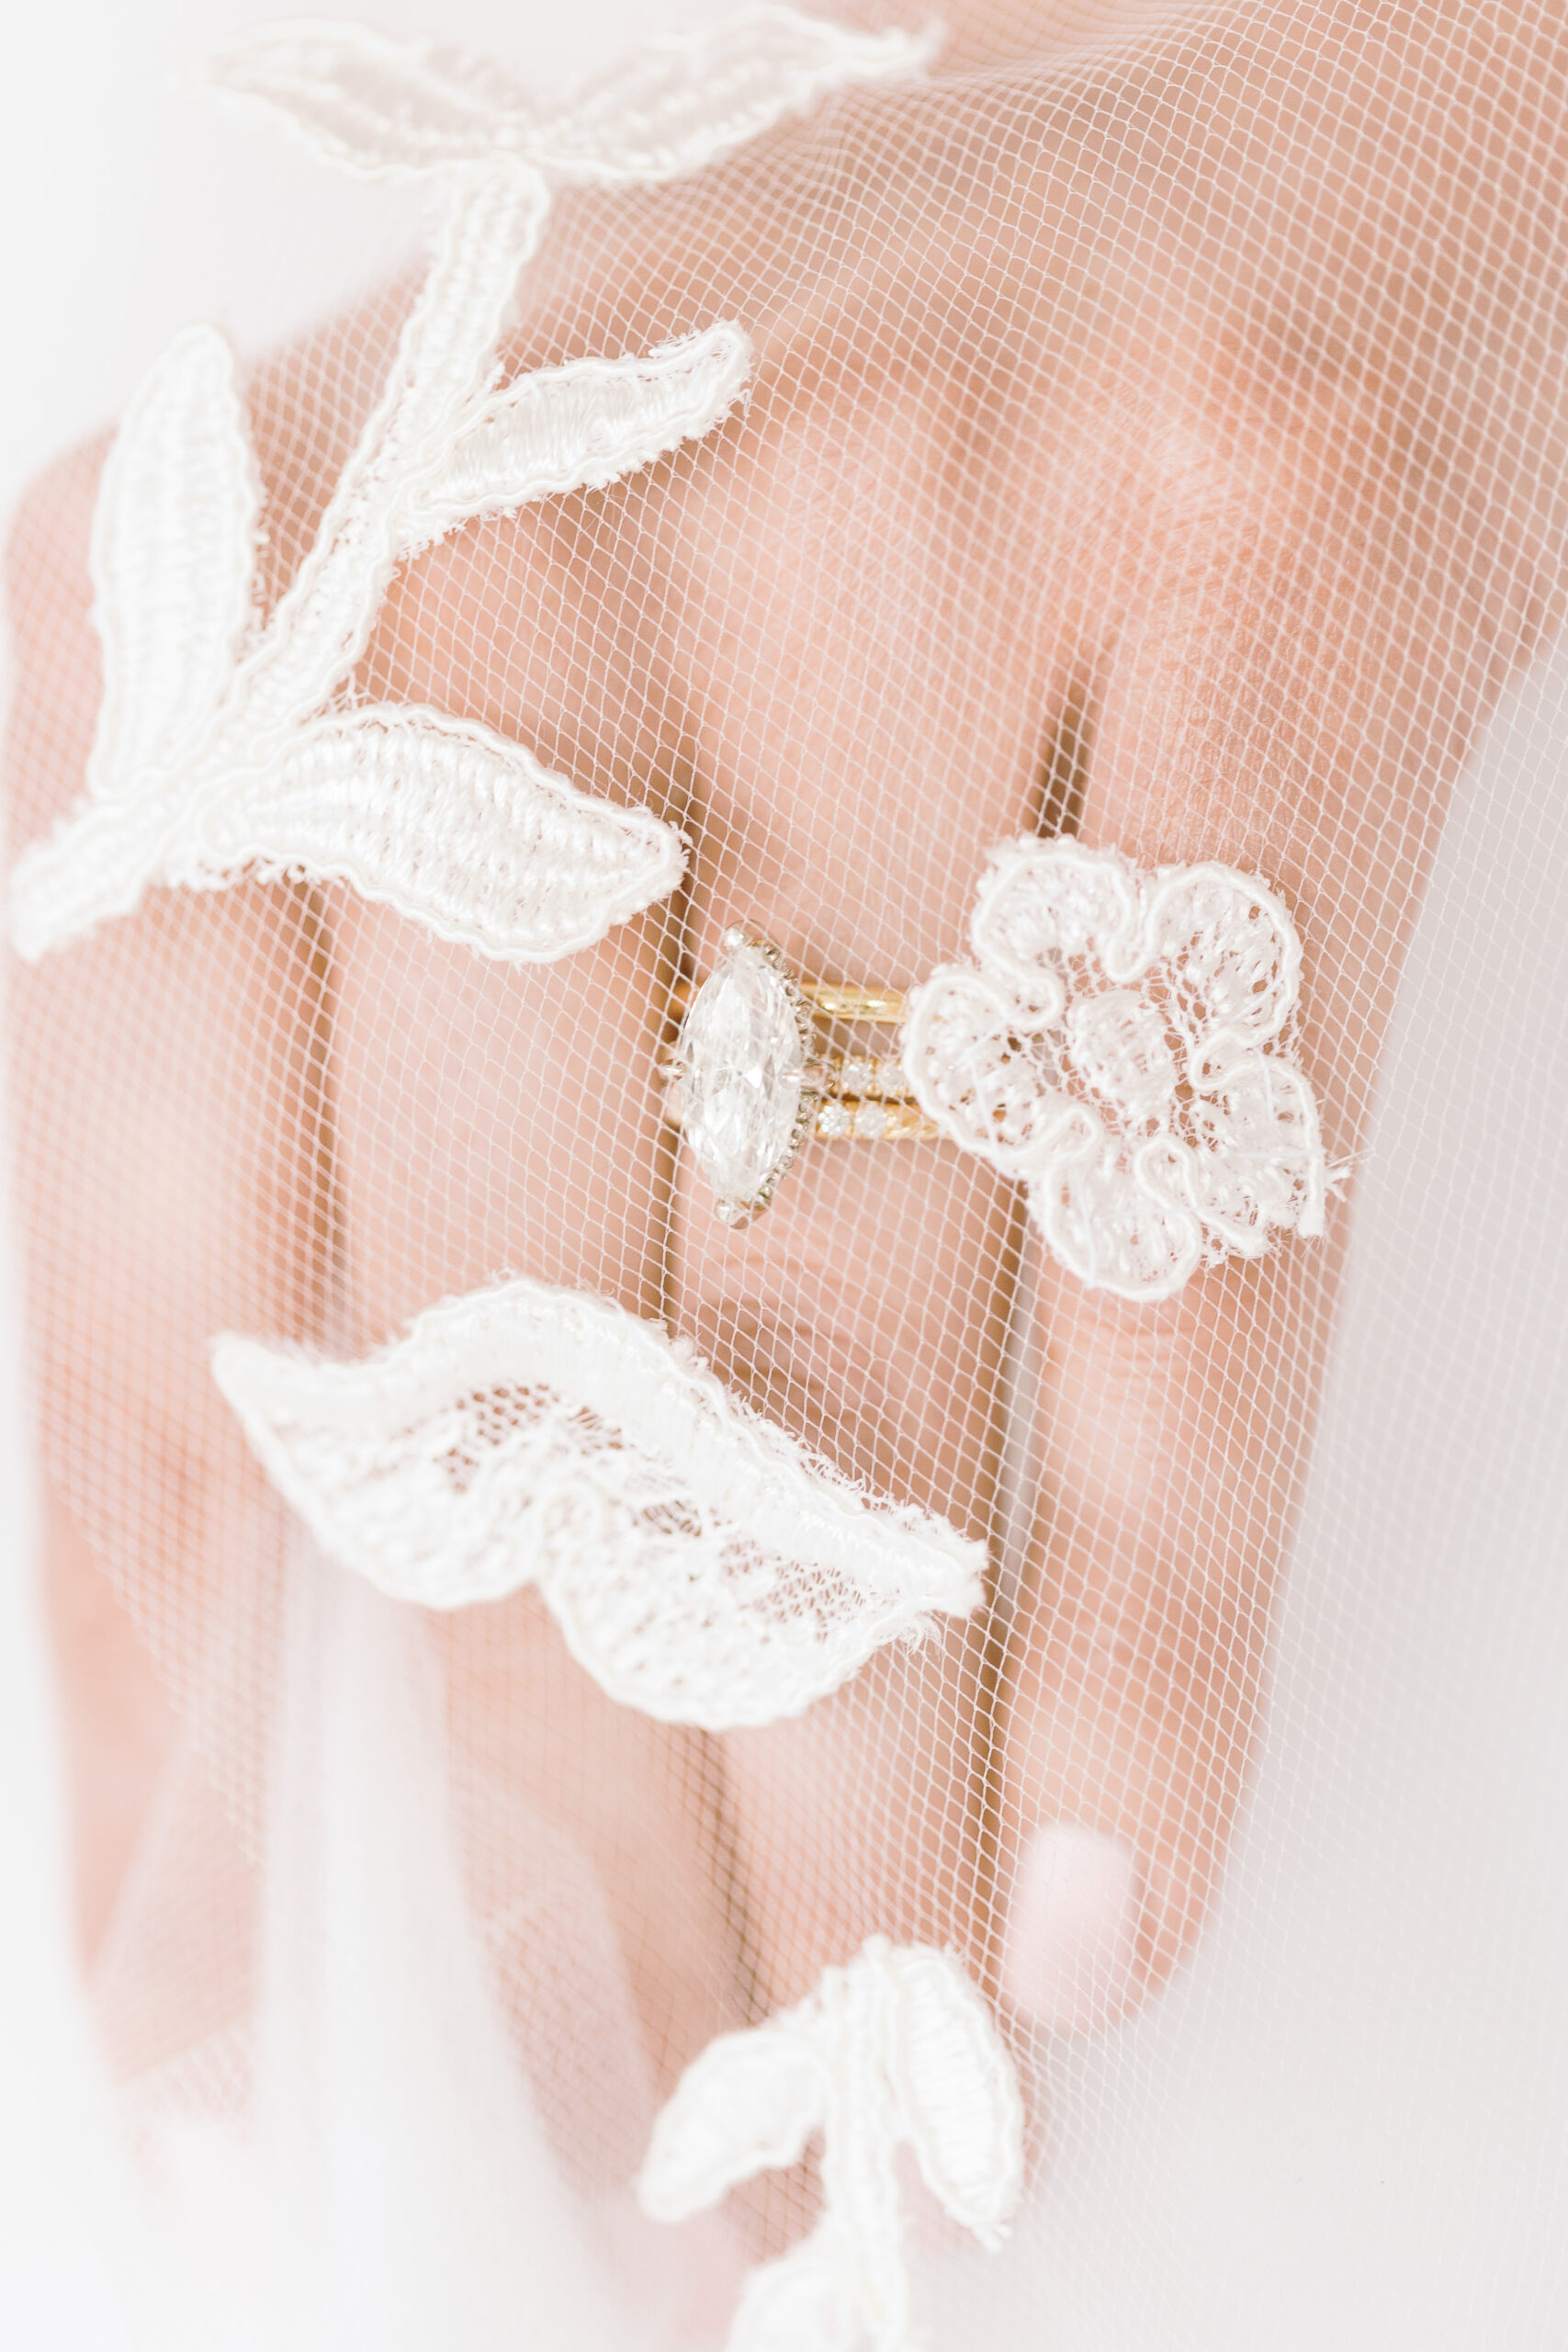 sarah kolis couture gown wedding ring and veil